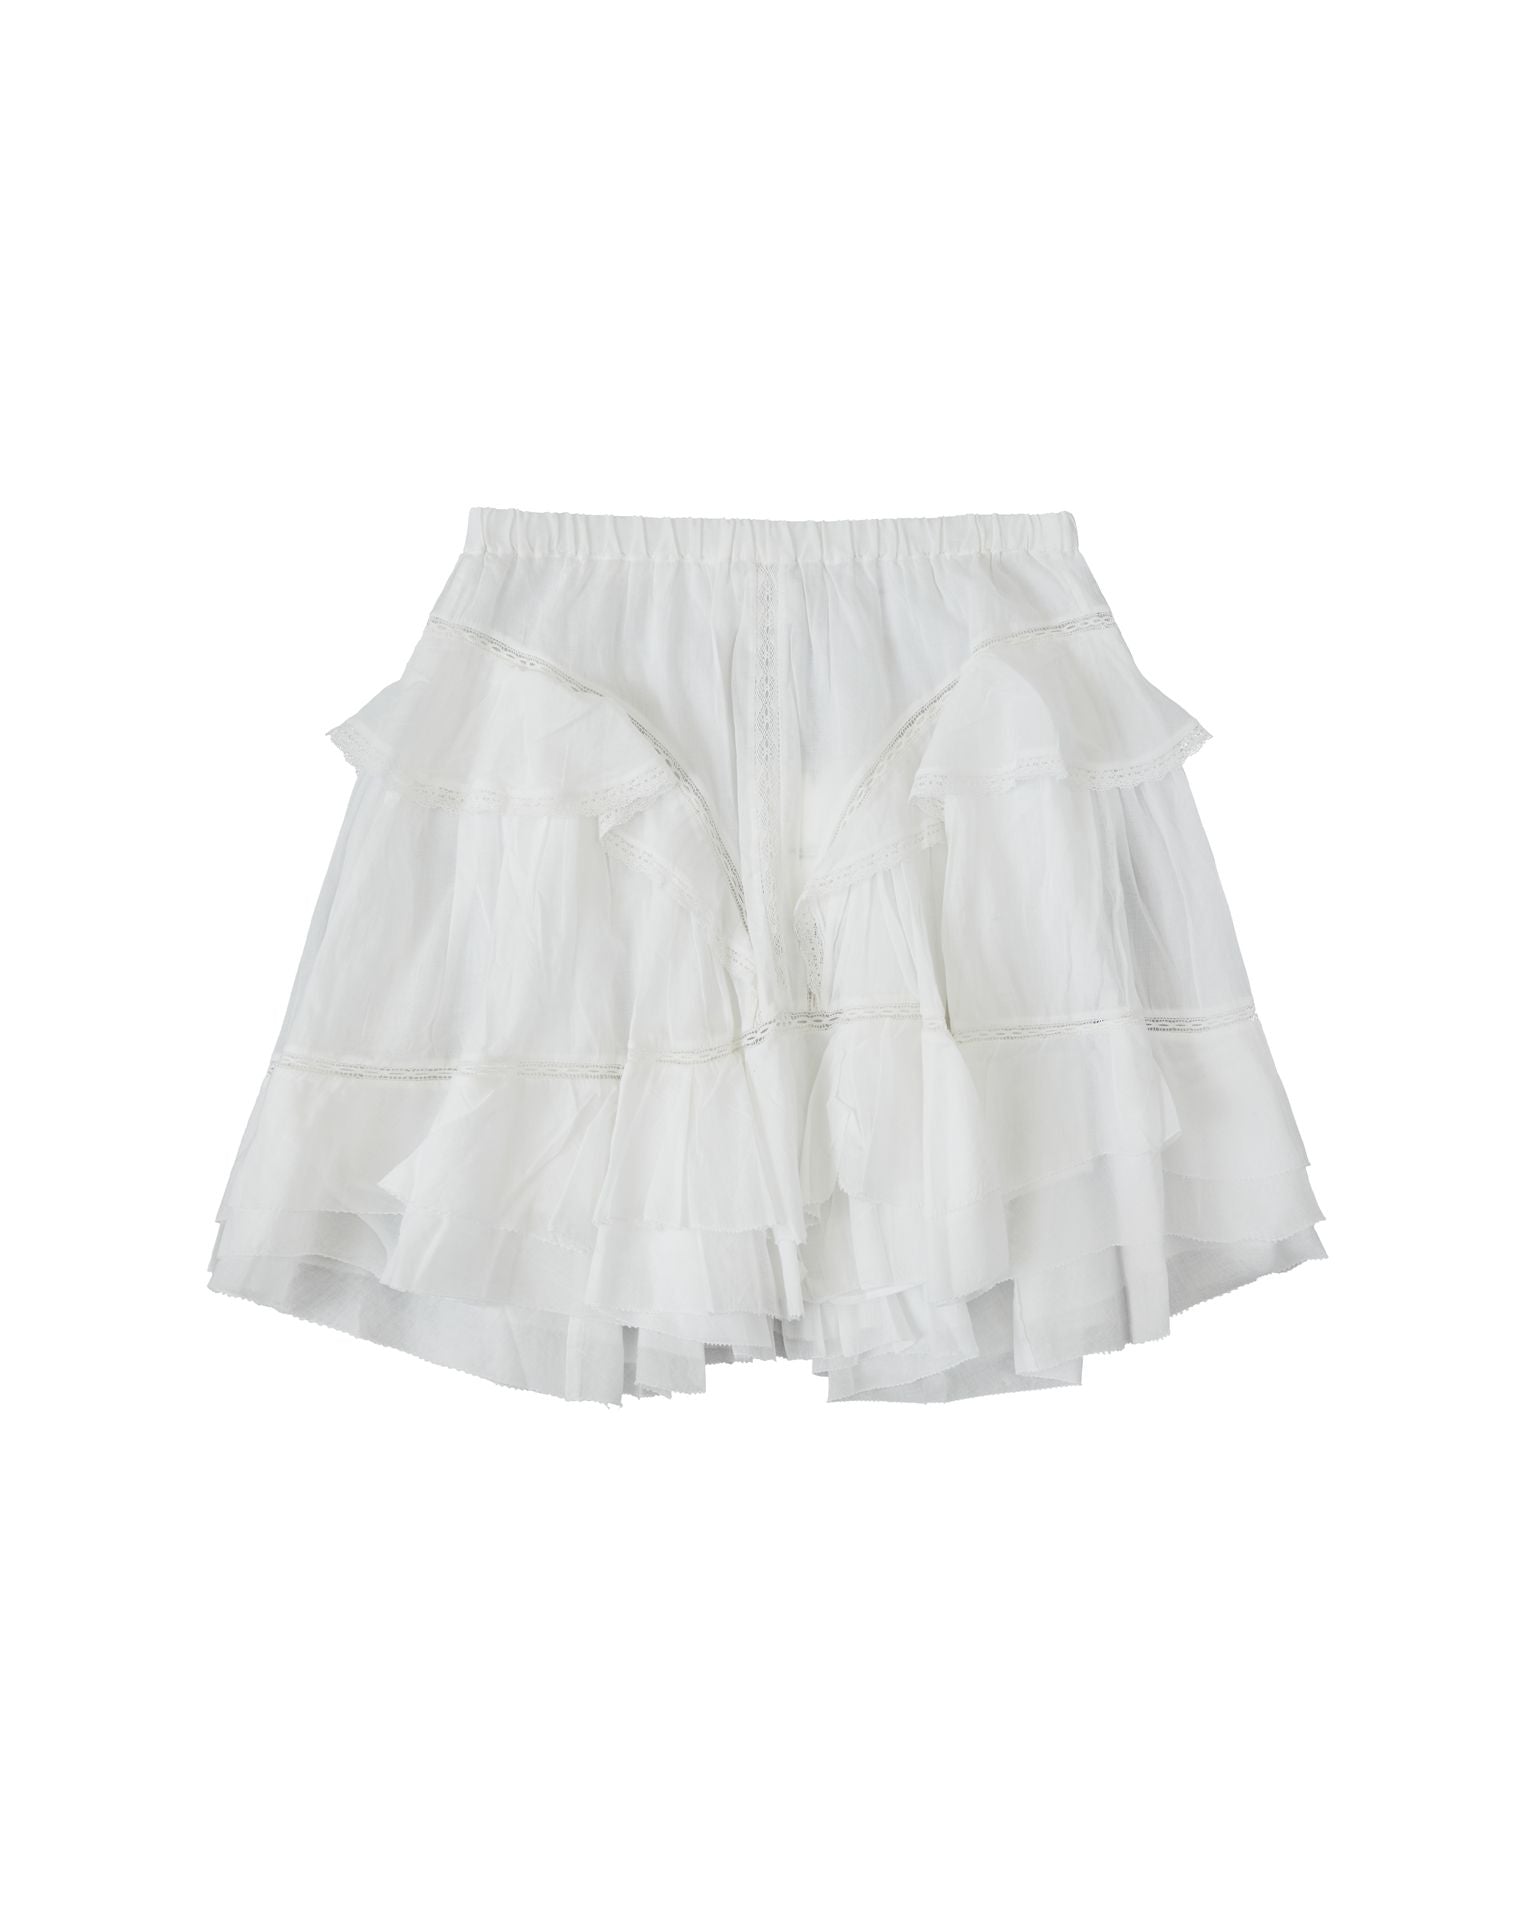 Moana skirt, white